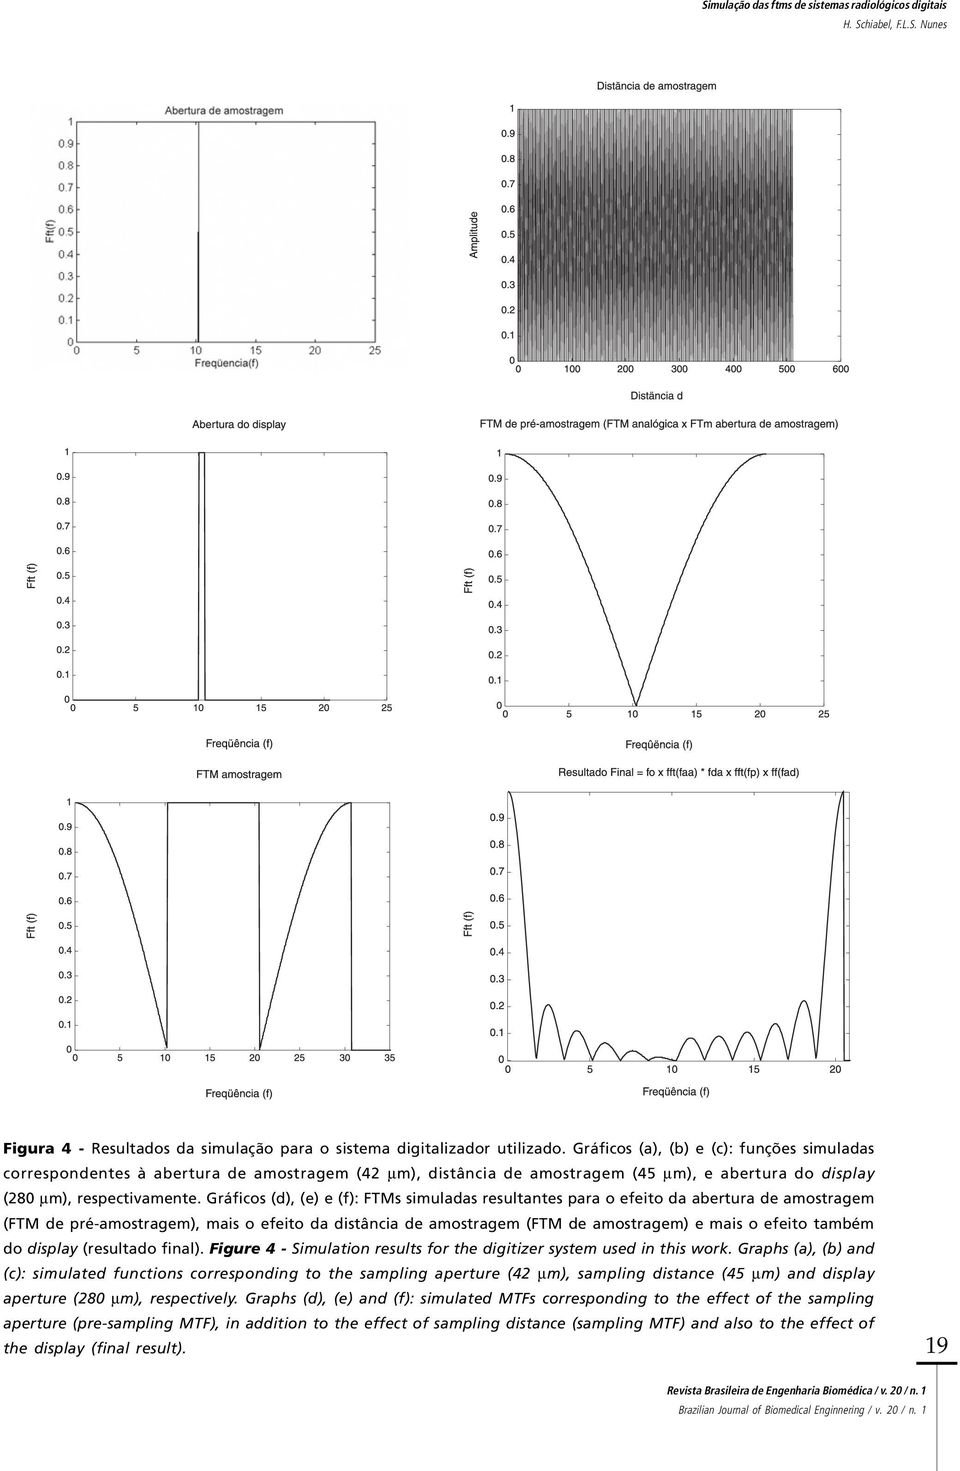 Gráficos (d), (e) e (f): FTMs simuladas resultantes para o efeito da abertura de amostragem (FTM de pré-amostragem), mais o efeito da distância de amostragem (FTM de amostragem) e mais o efeito